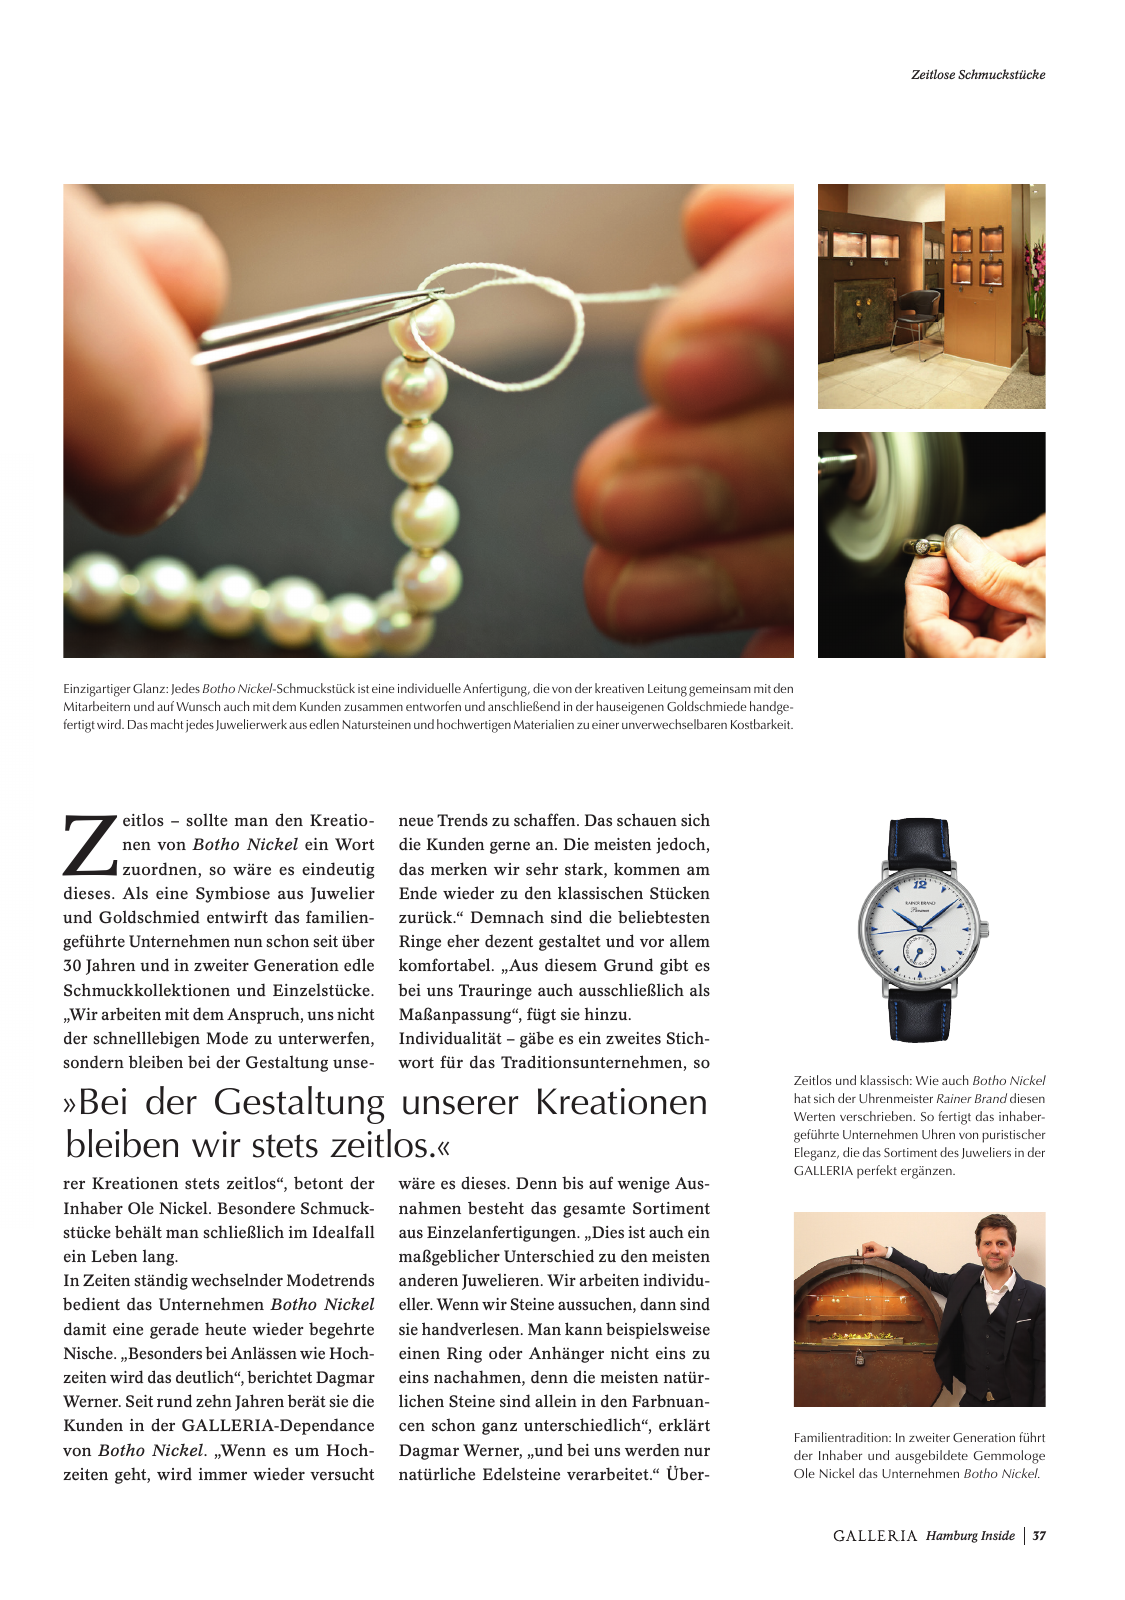 Vorschau GALLERIA Magazin Hamburg Inside 2 Seite 37